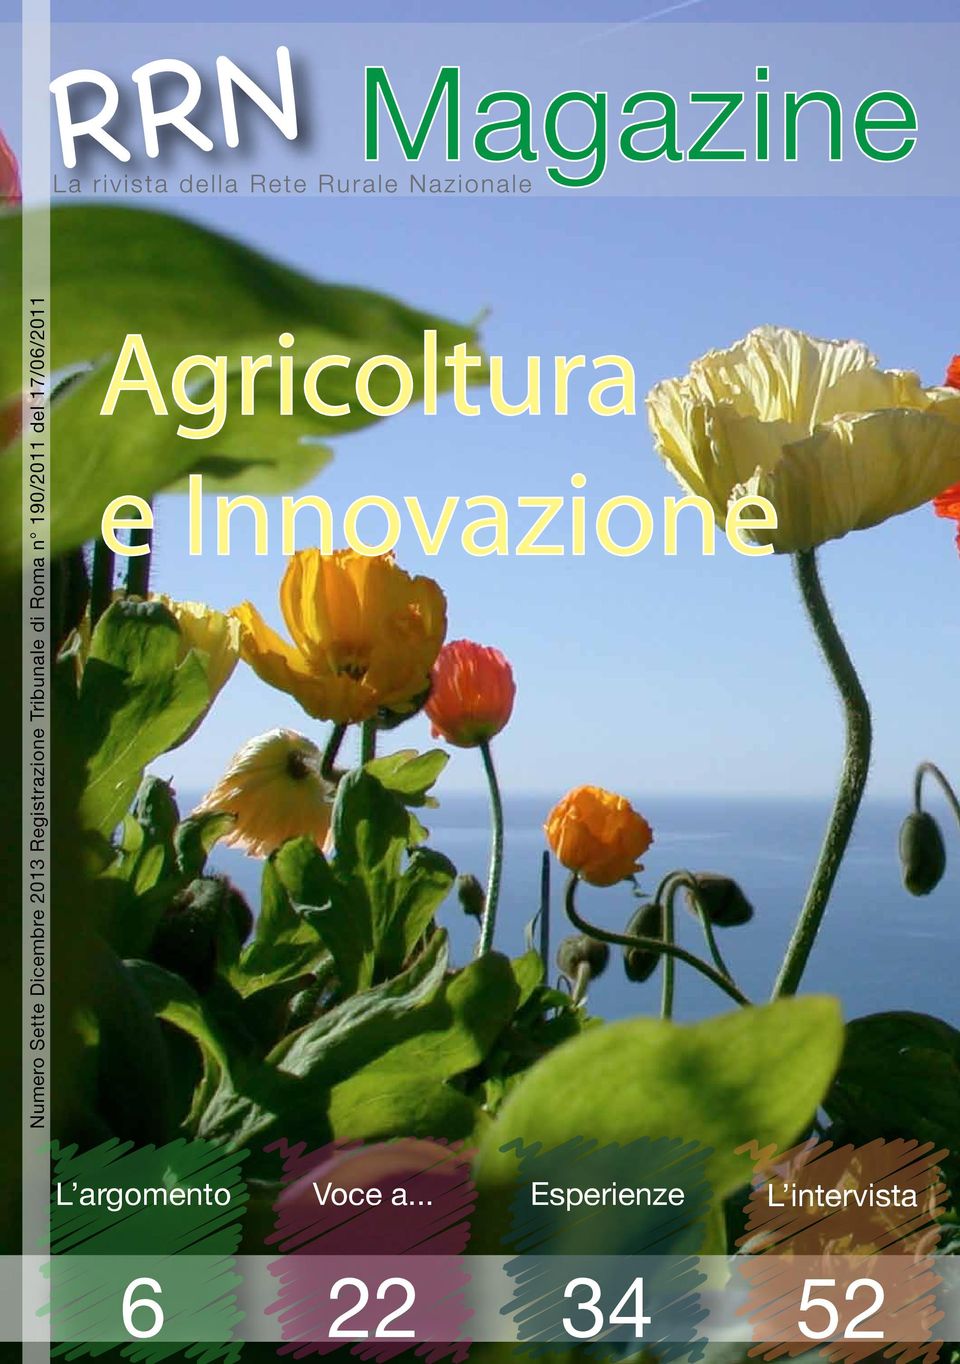 17/06/2011 Agricoltura e Innovazione L